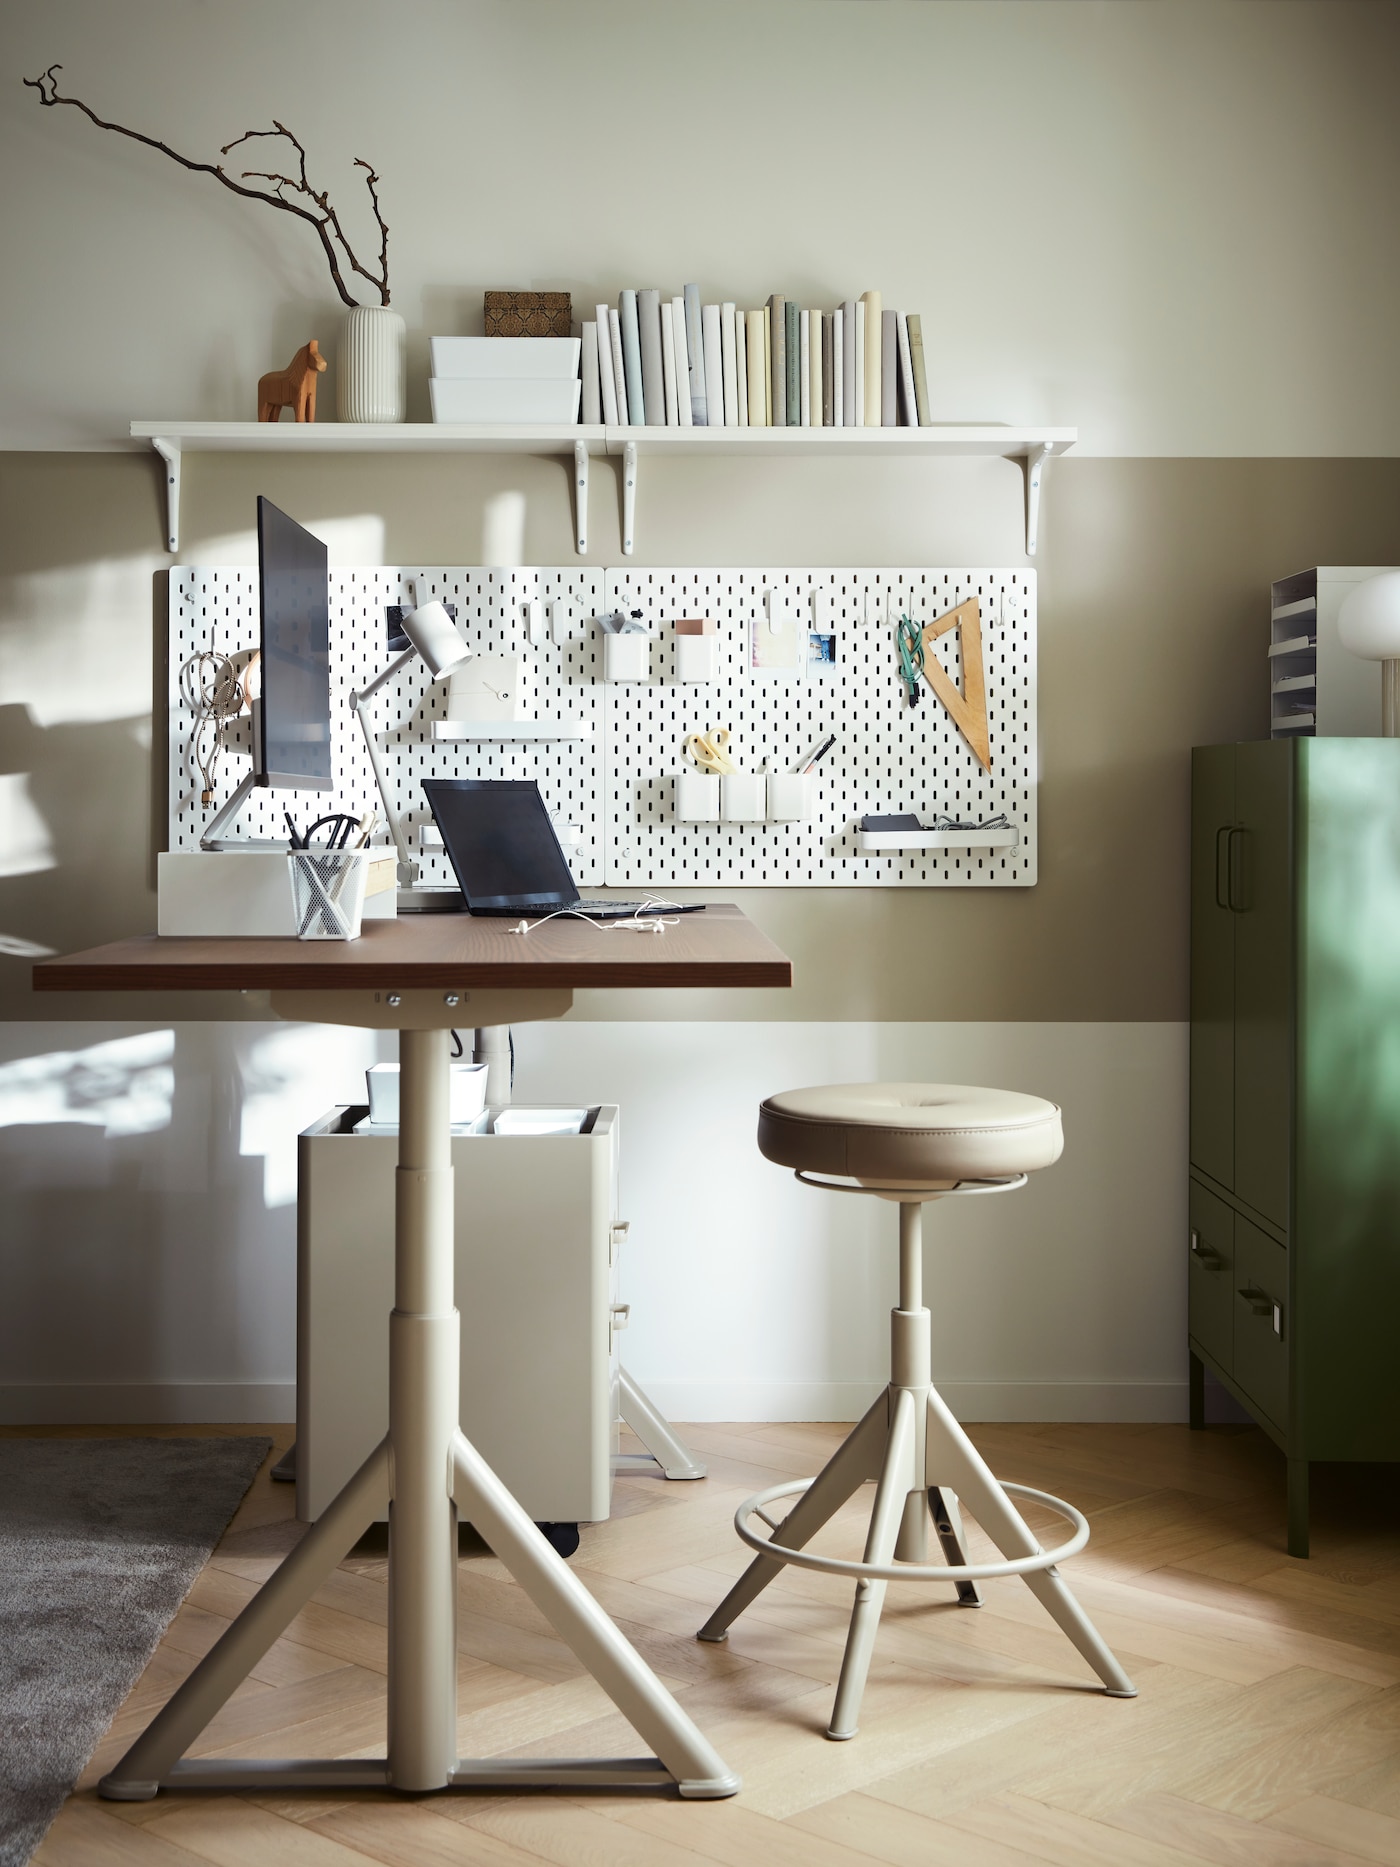 Ikea Idasen Desk: Functionality and Style Combined插图4